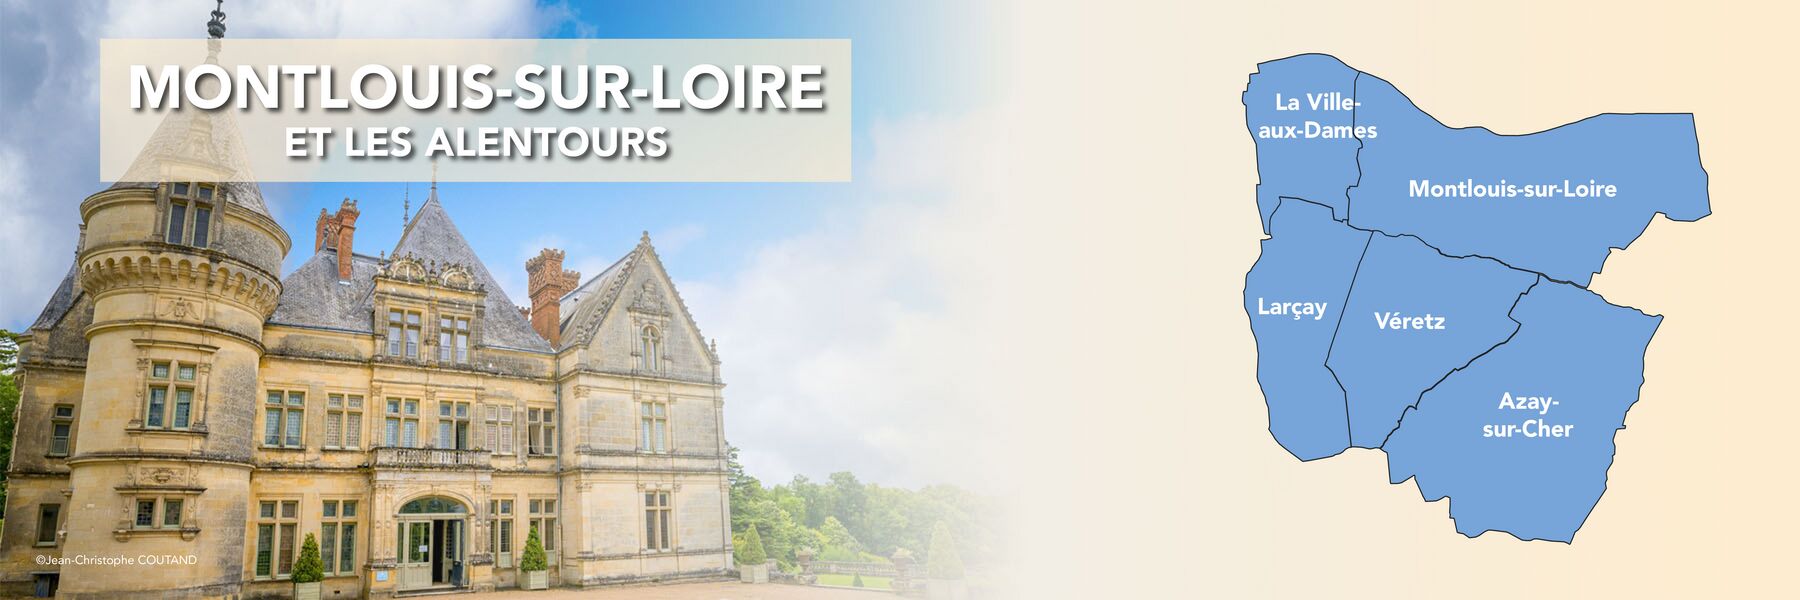 Montlouis-sur-Loire et les alentours